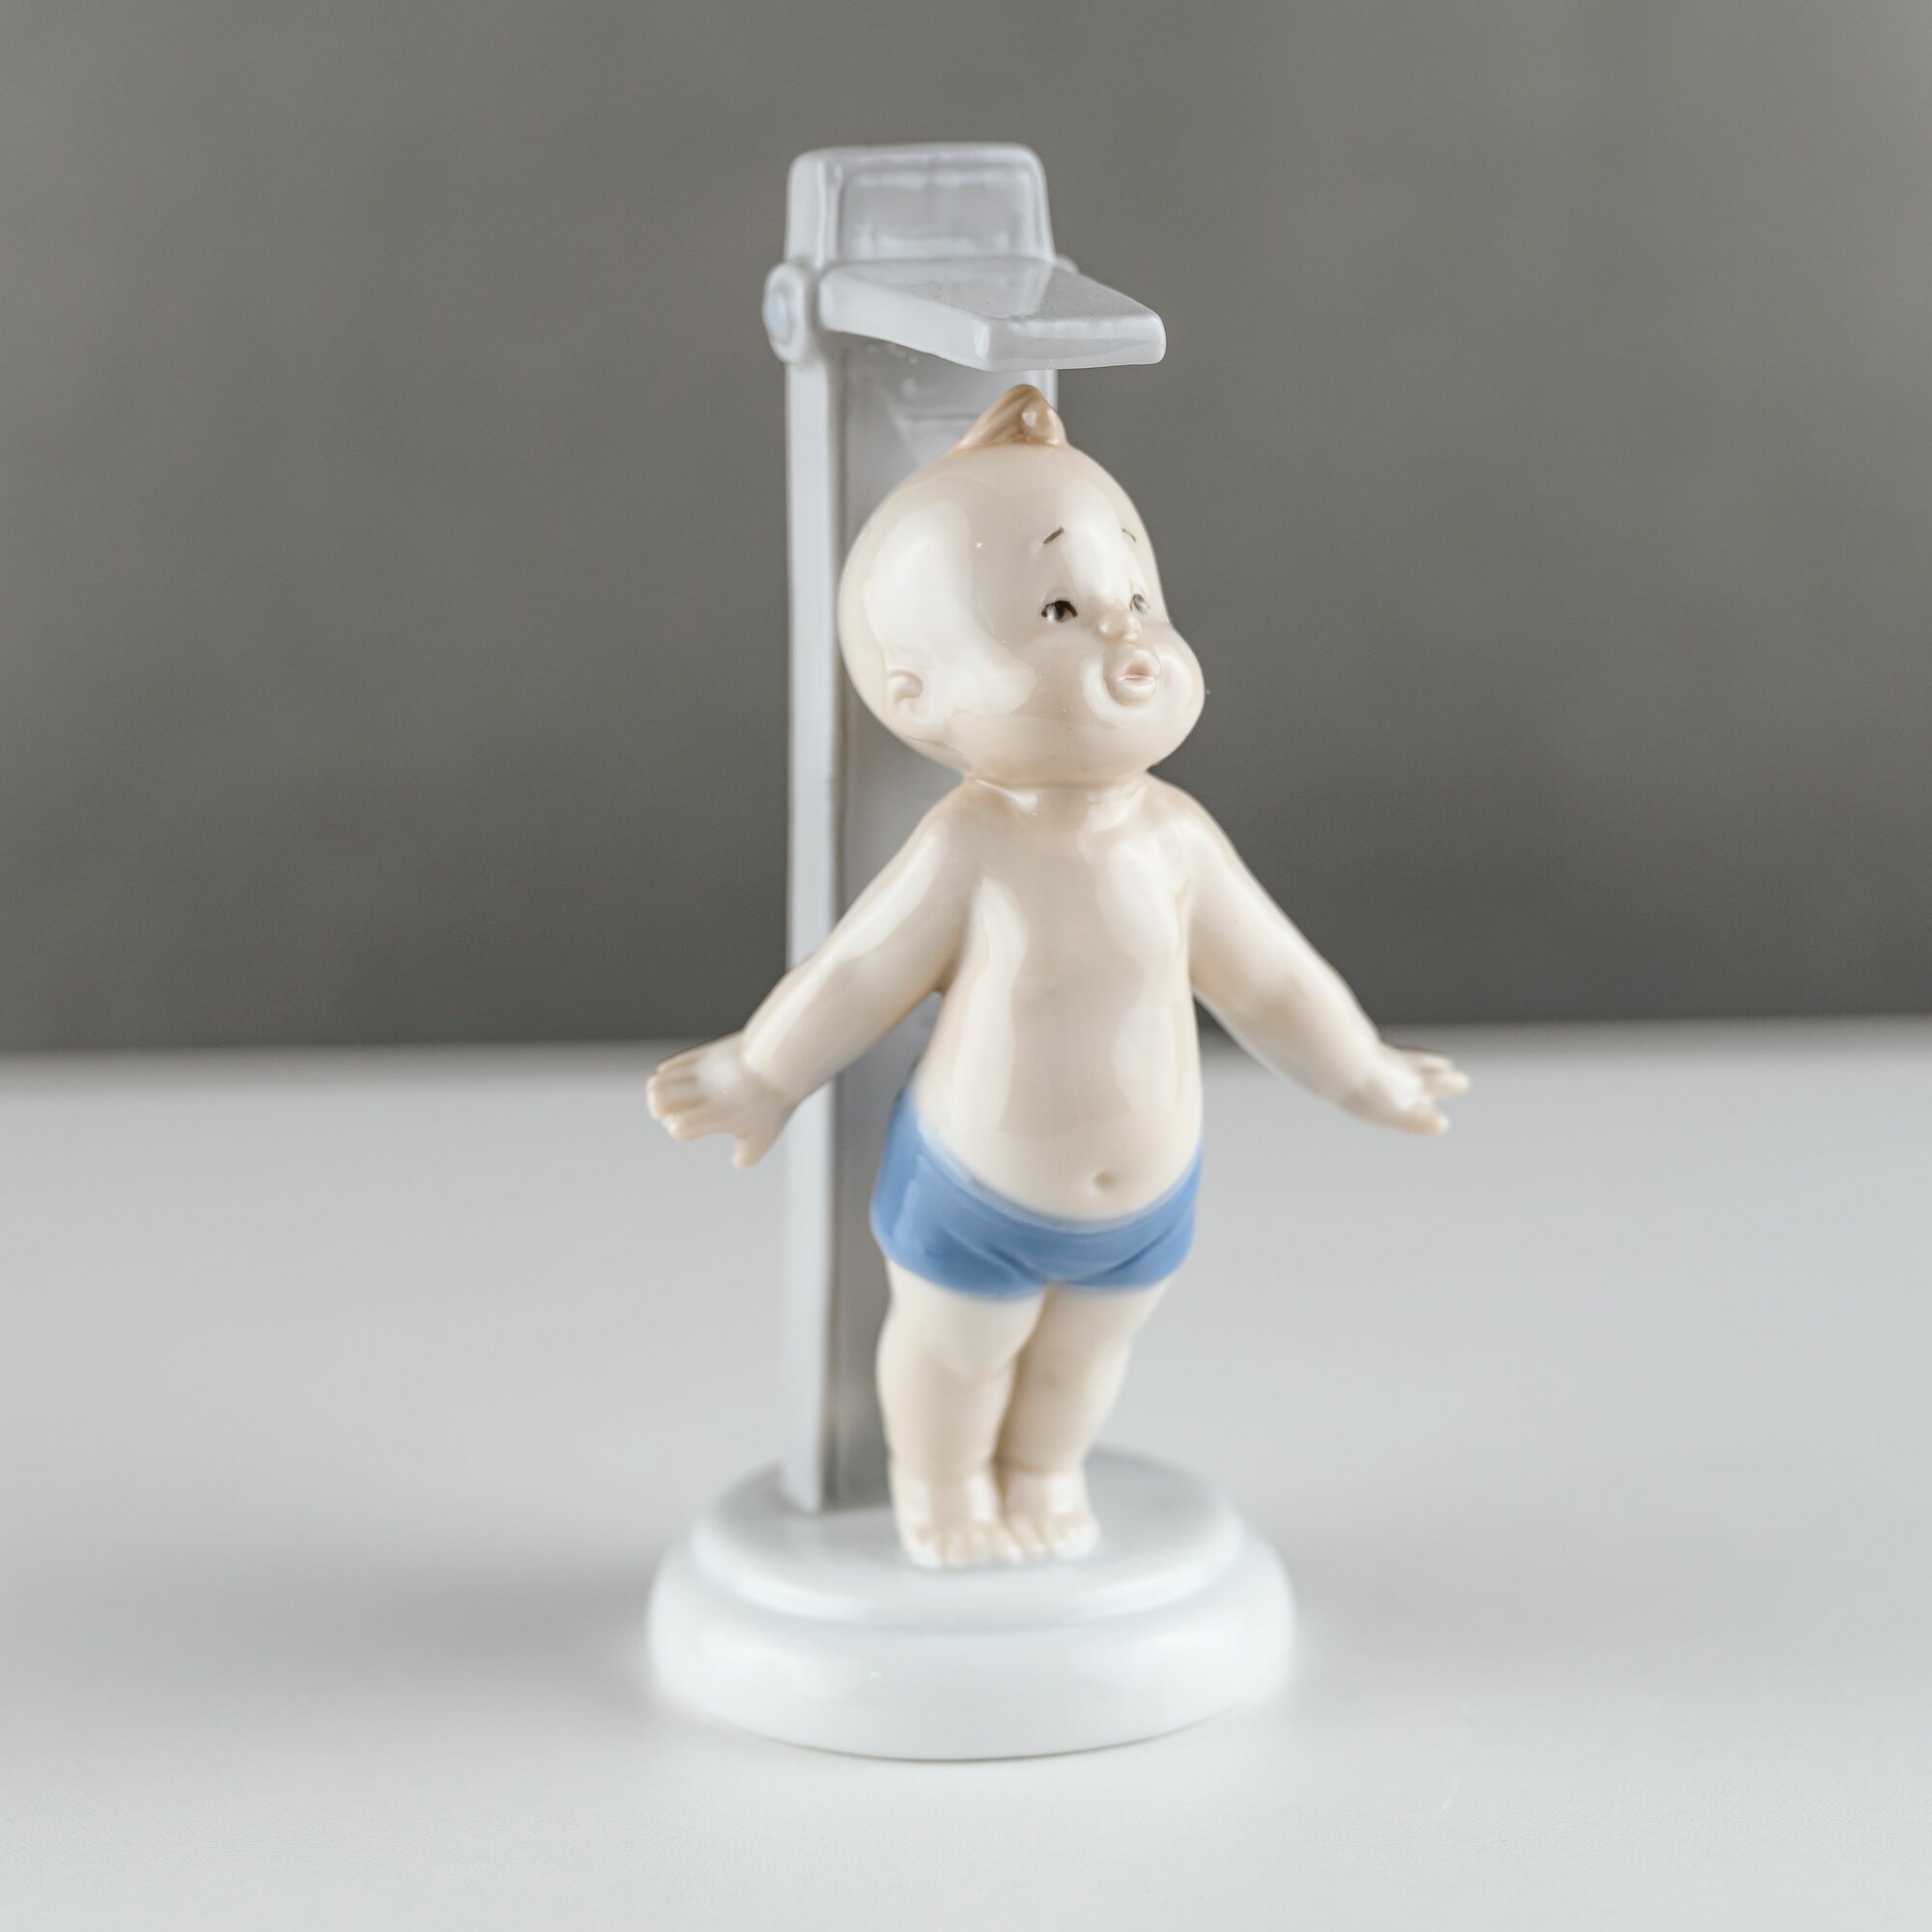 Фигурка (статуэтка) "Мальчик под душем" (Pavone). Фарфор. Павоне